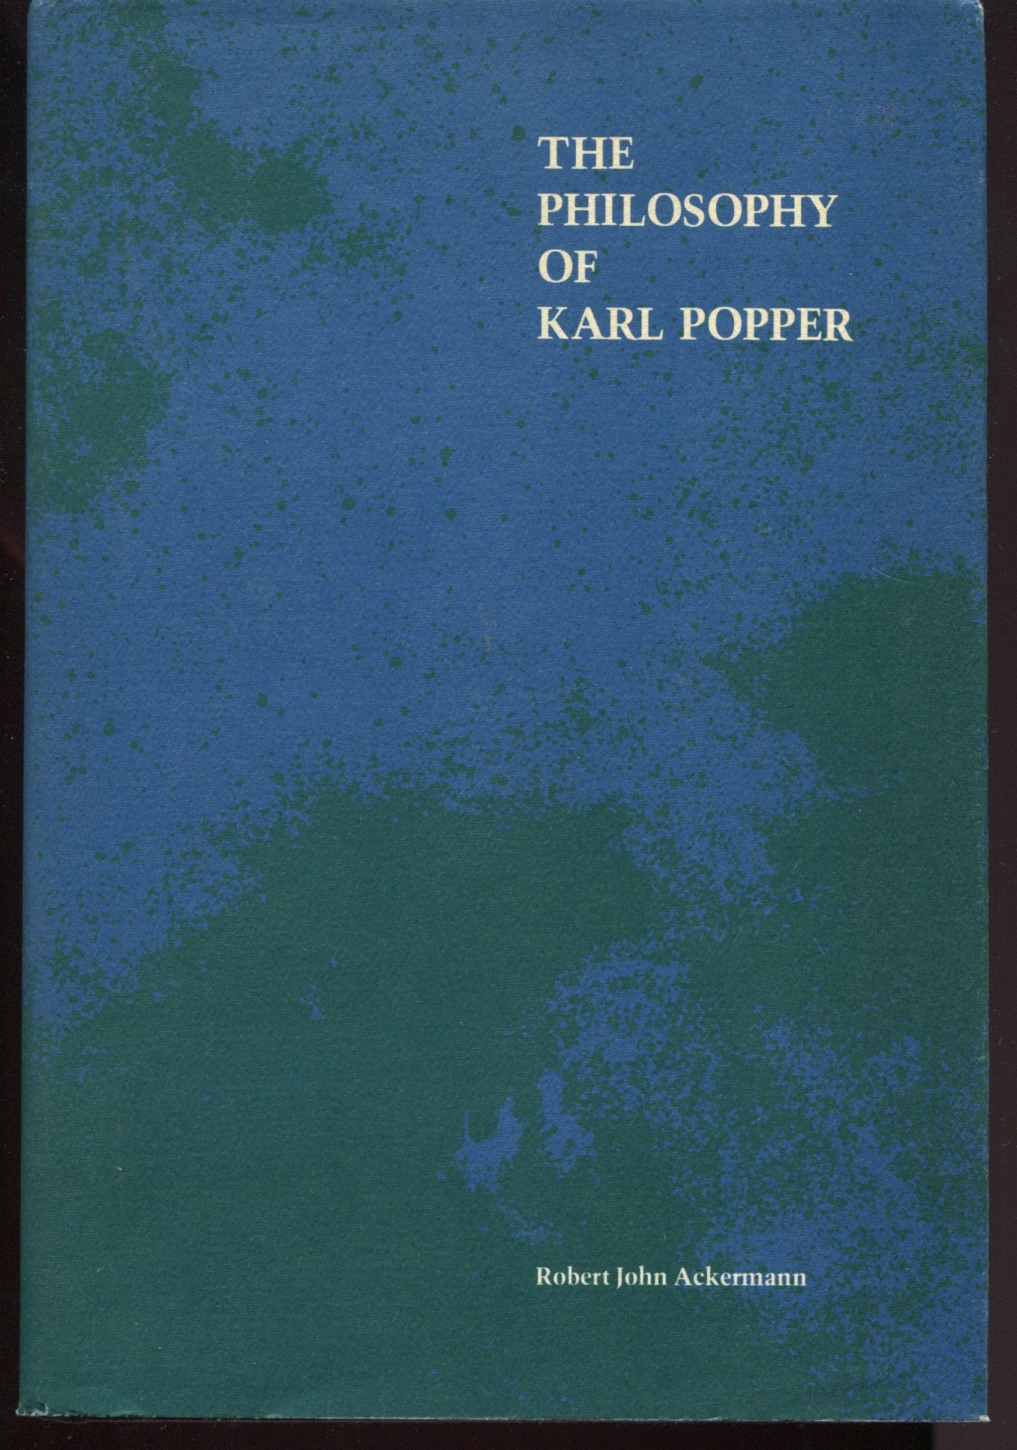 The Philosophy of Karl Popper.